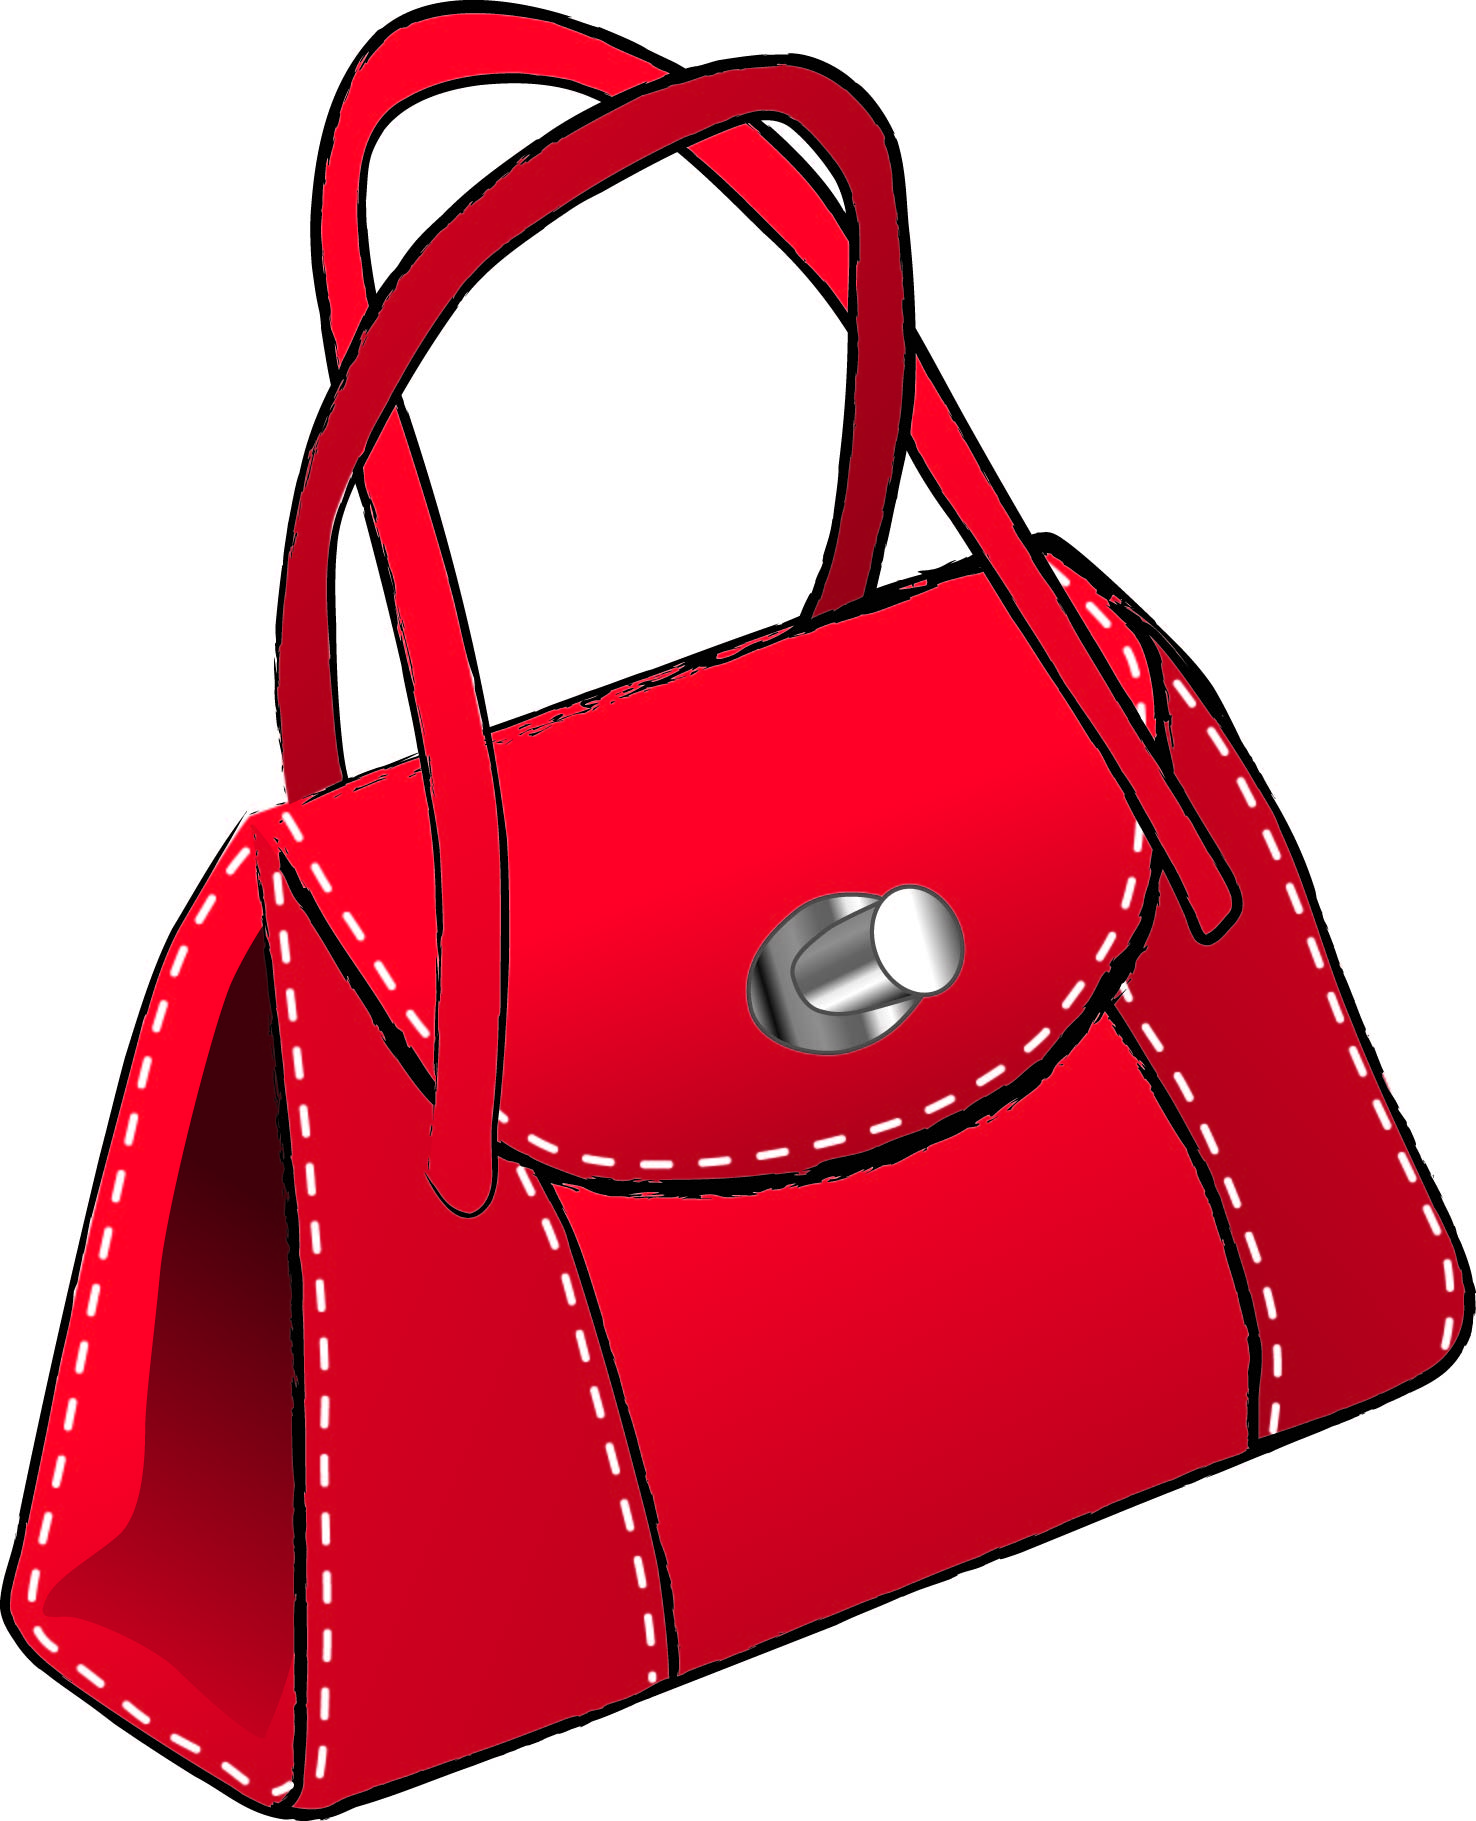 Free Handbag Cliparts, Download Free Clip Art, Free Clip Art